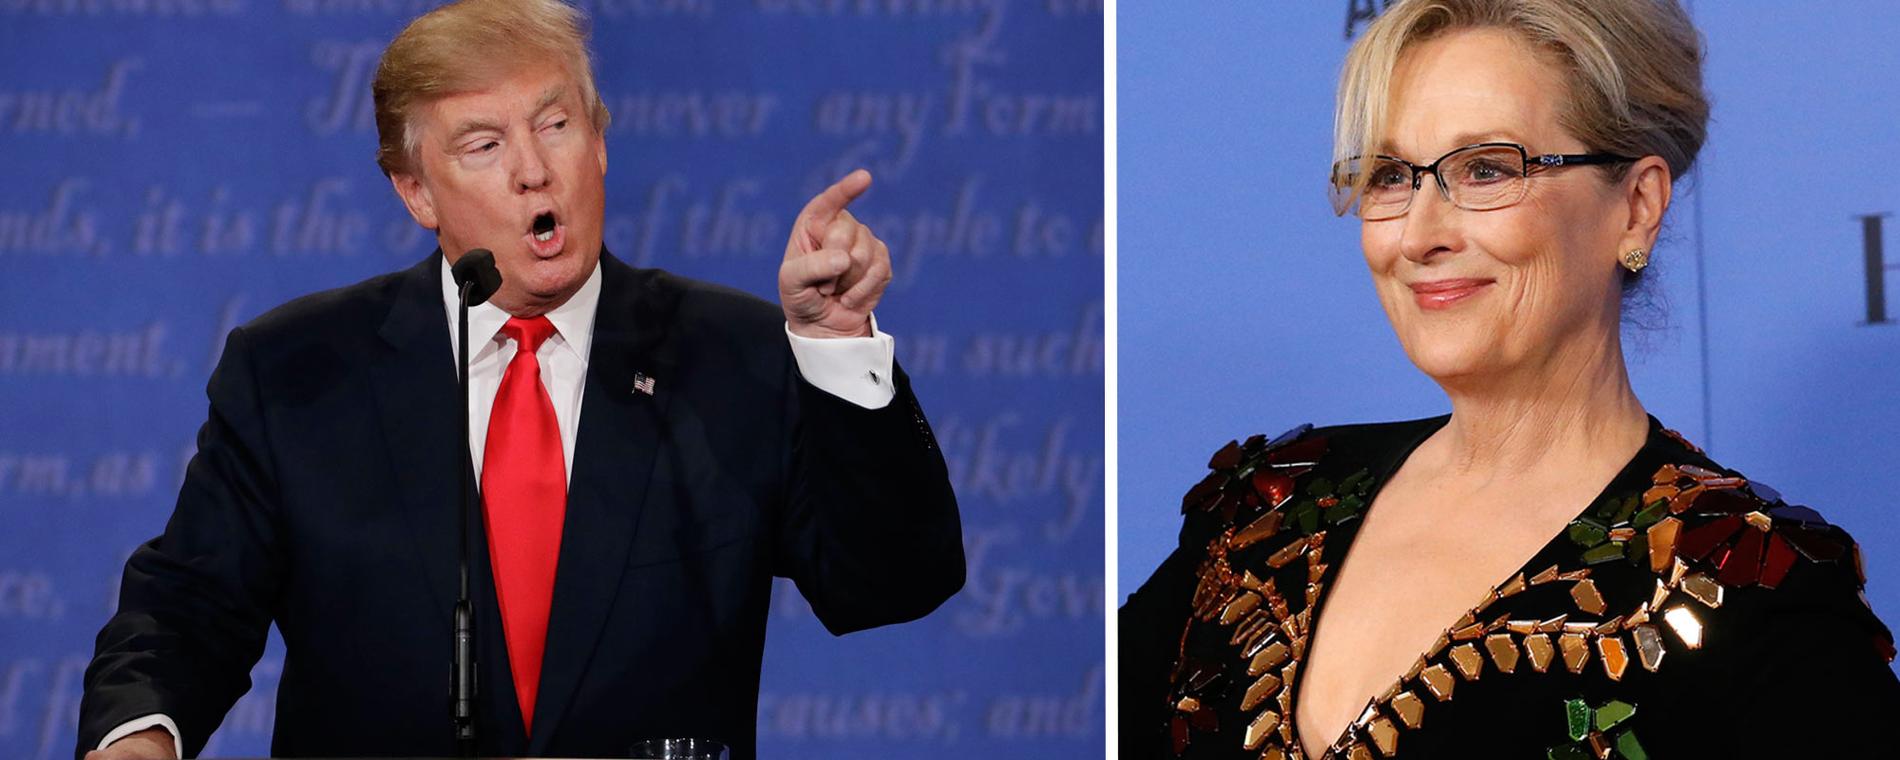 Meryl Streeps kritik mot Trump på Golden Globe-galan har fått mycket uppmärksamhet,